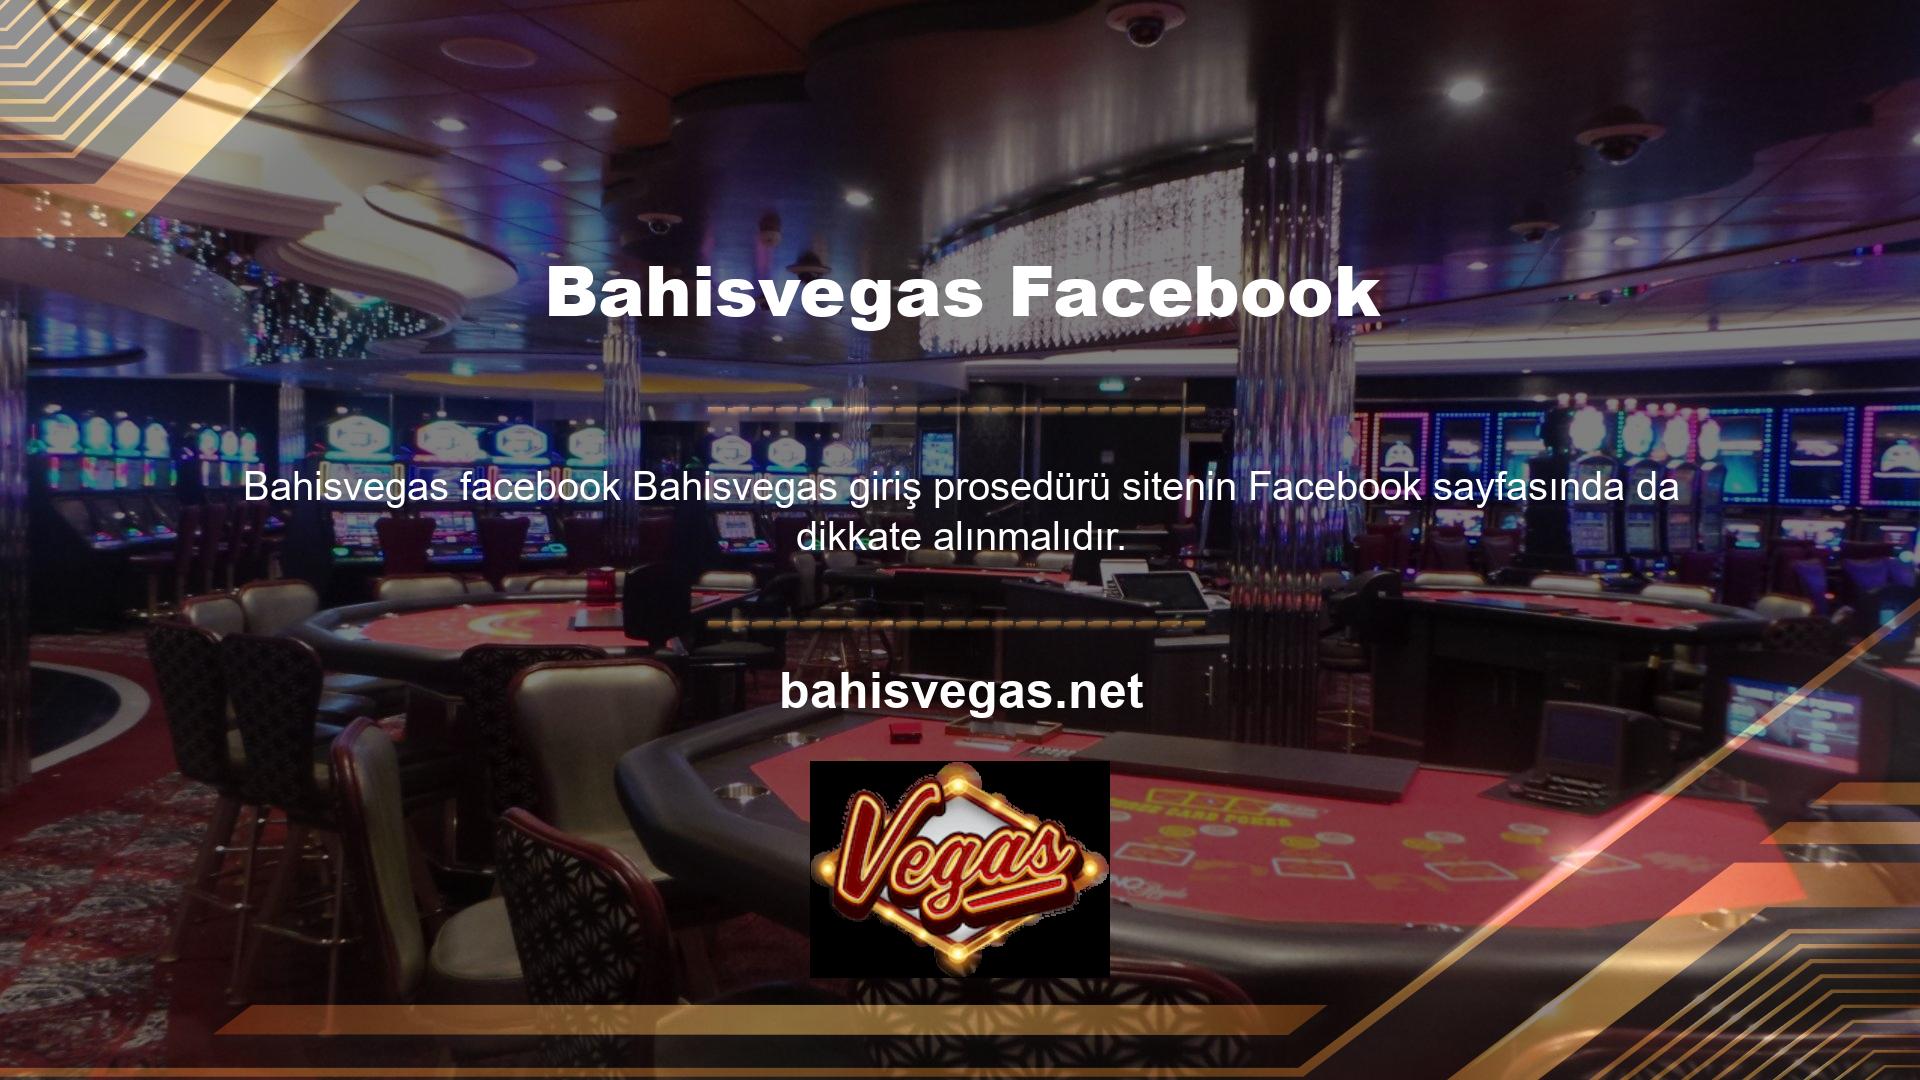 Bahisvegas sosyal medya sayfalarına giriş yapmak için bahis sitesini kullanabilirsiniz